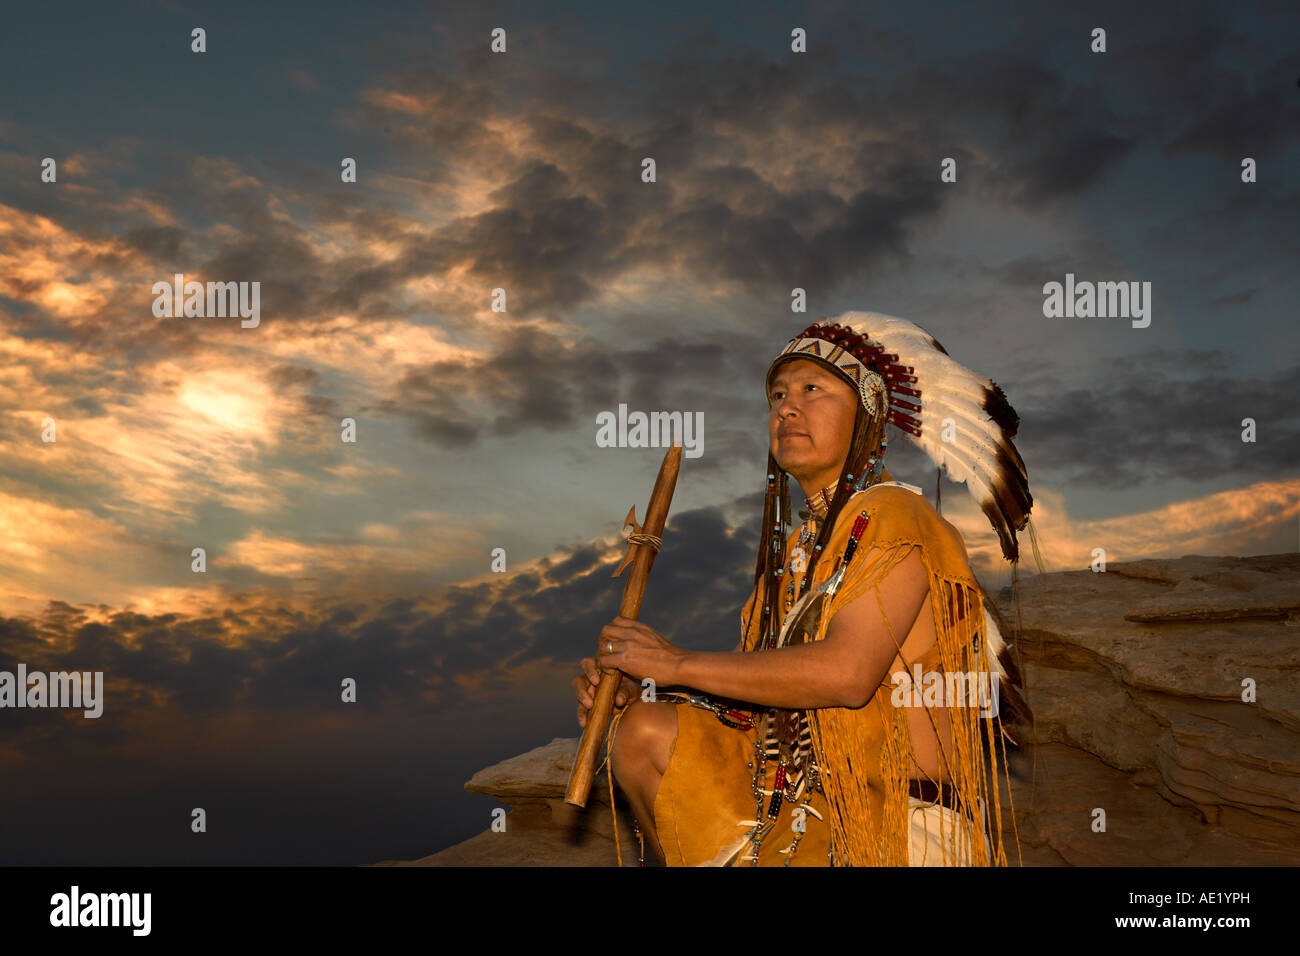 Native American Indian man avec équipement culturel coiffure modèles de conception uniforme de plumes bracelet en cuir nature coucher du soleil lever du soleil Banque D'Images